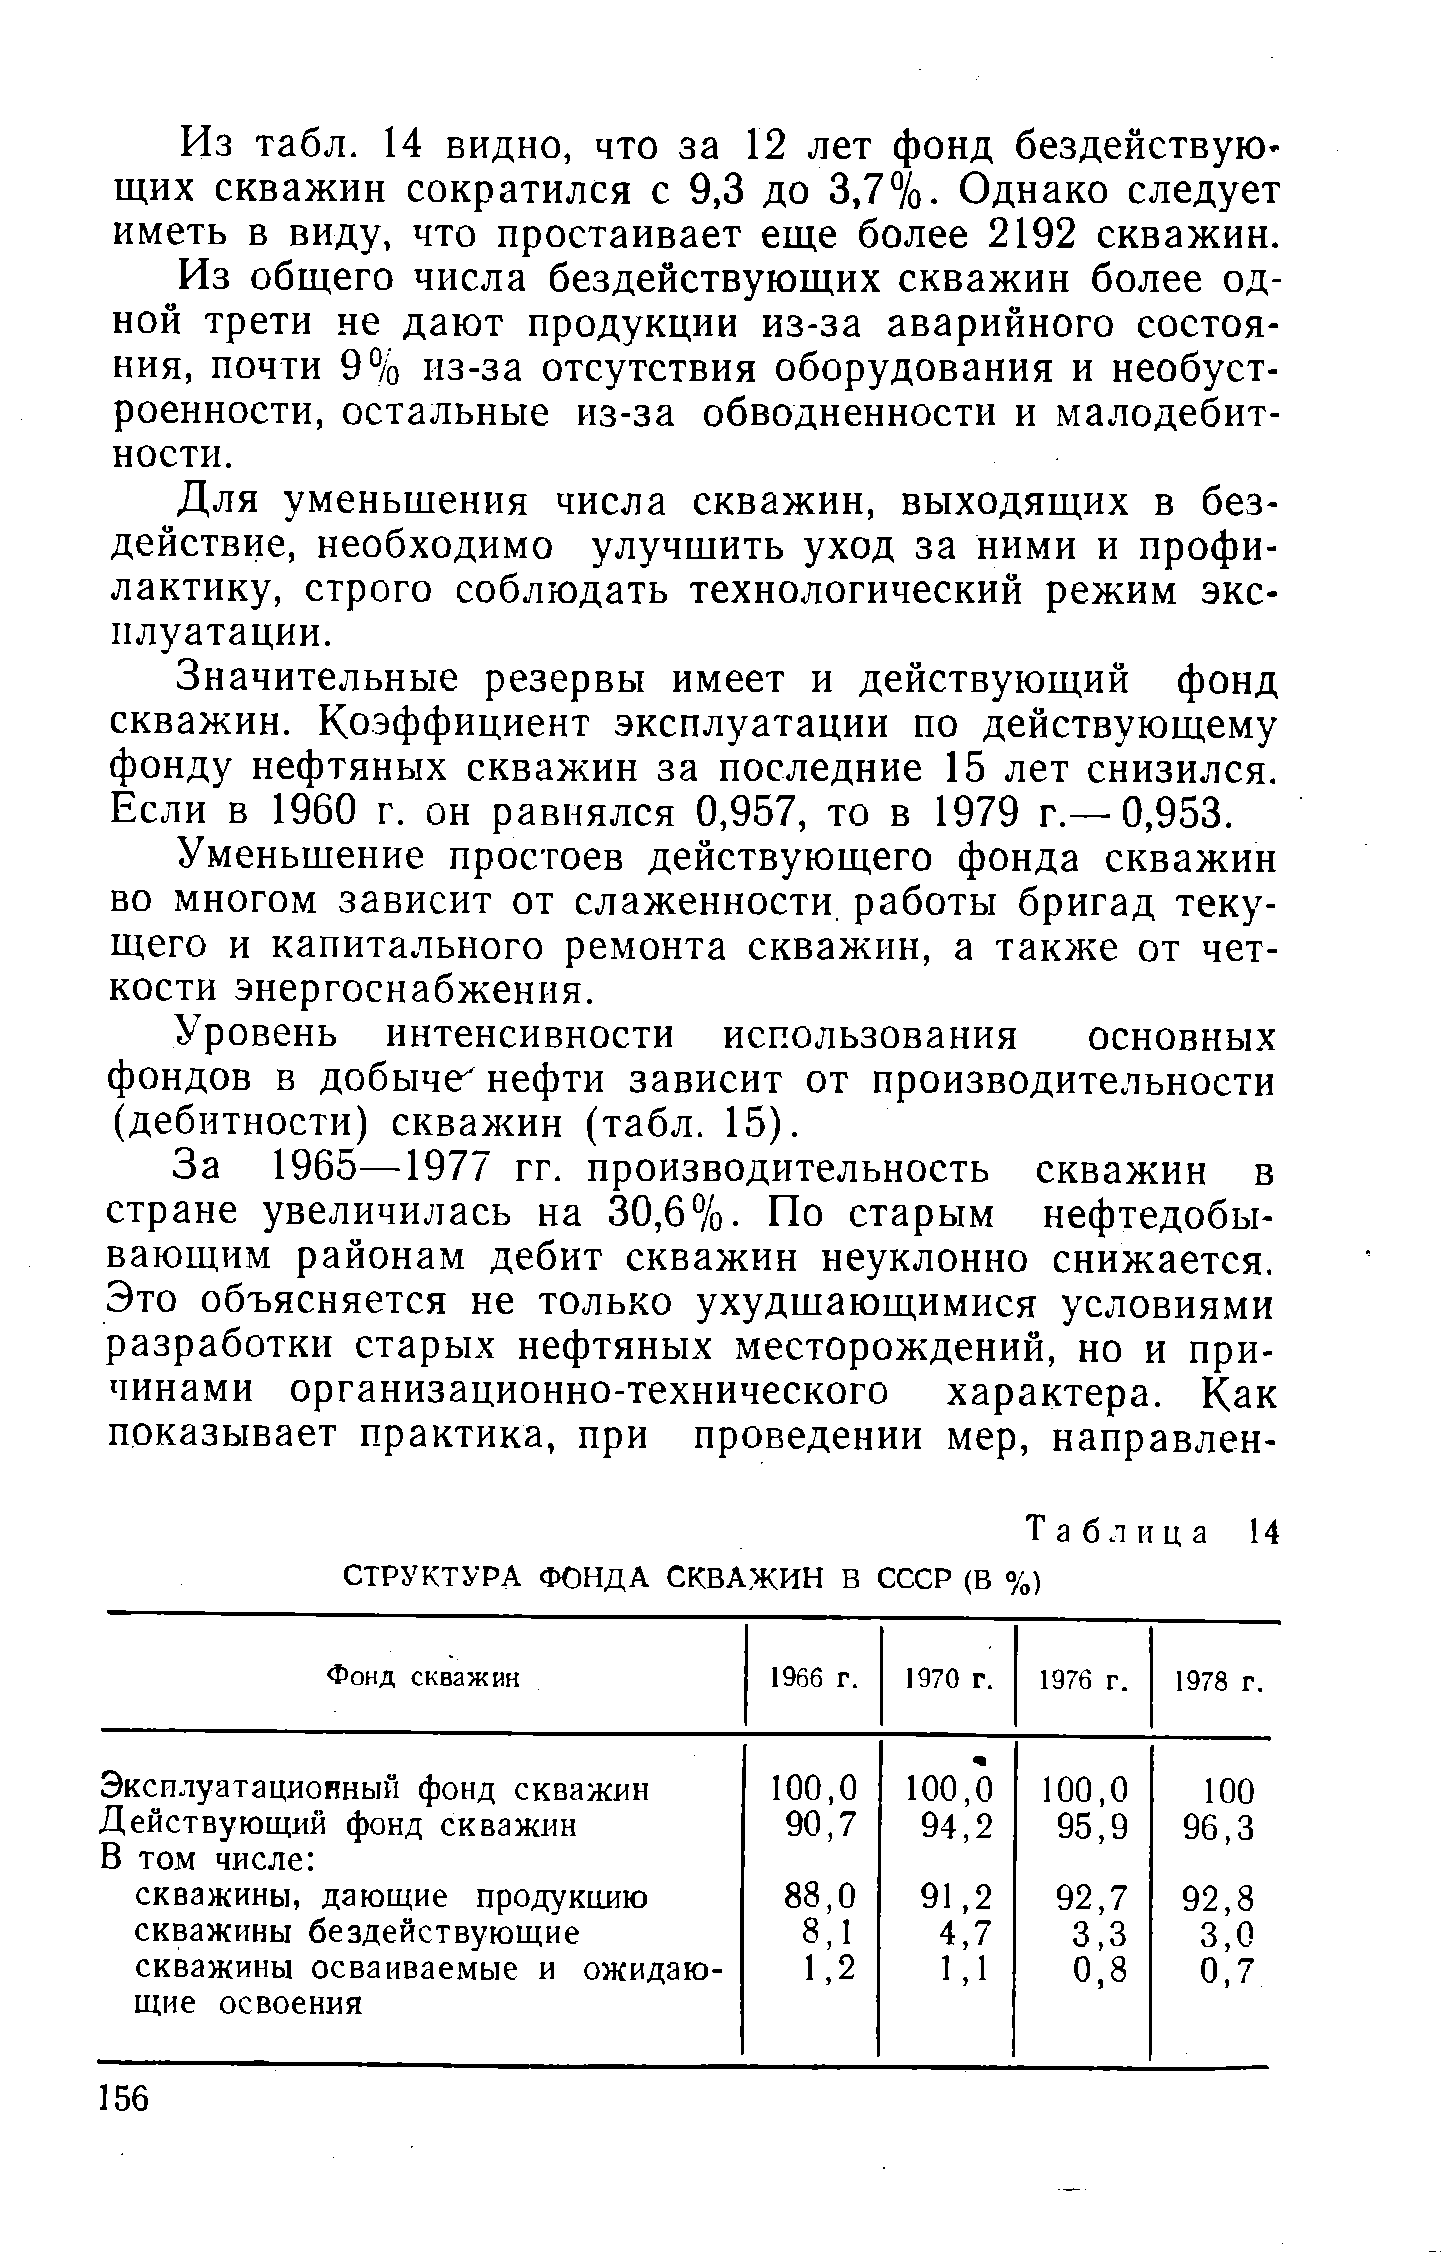 Таблица 14 СТРУКТУРА ФОНДА СКВАЖИН В СССР (В %)
